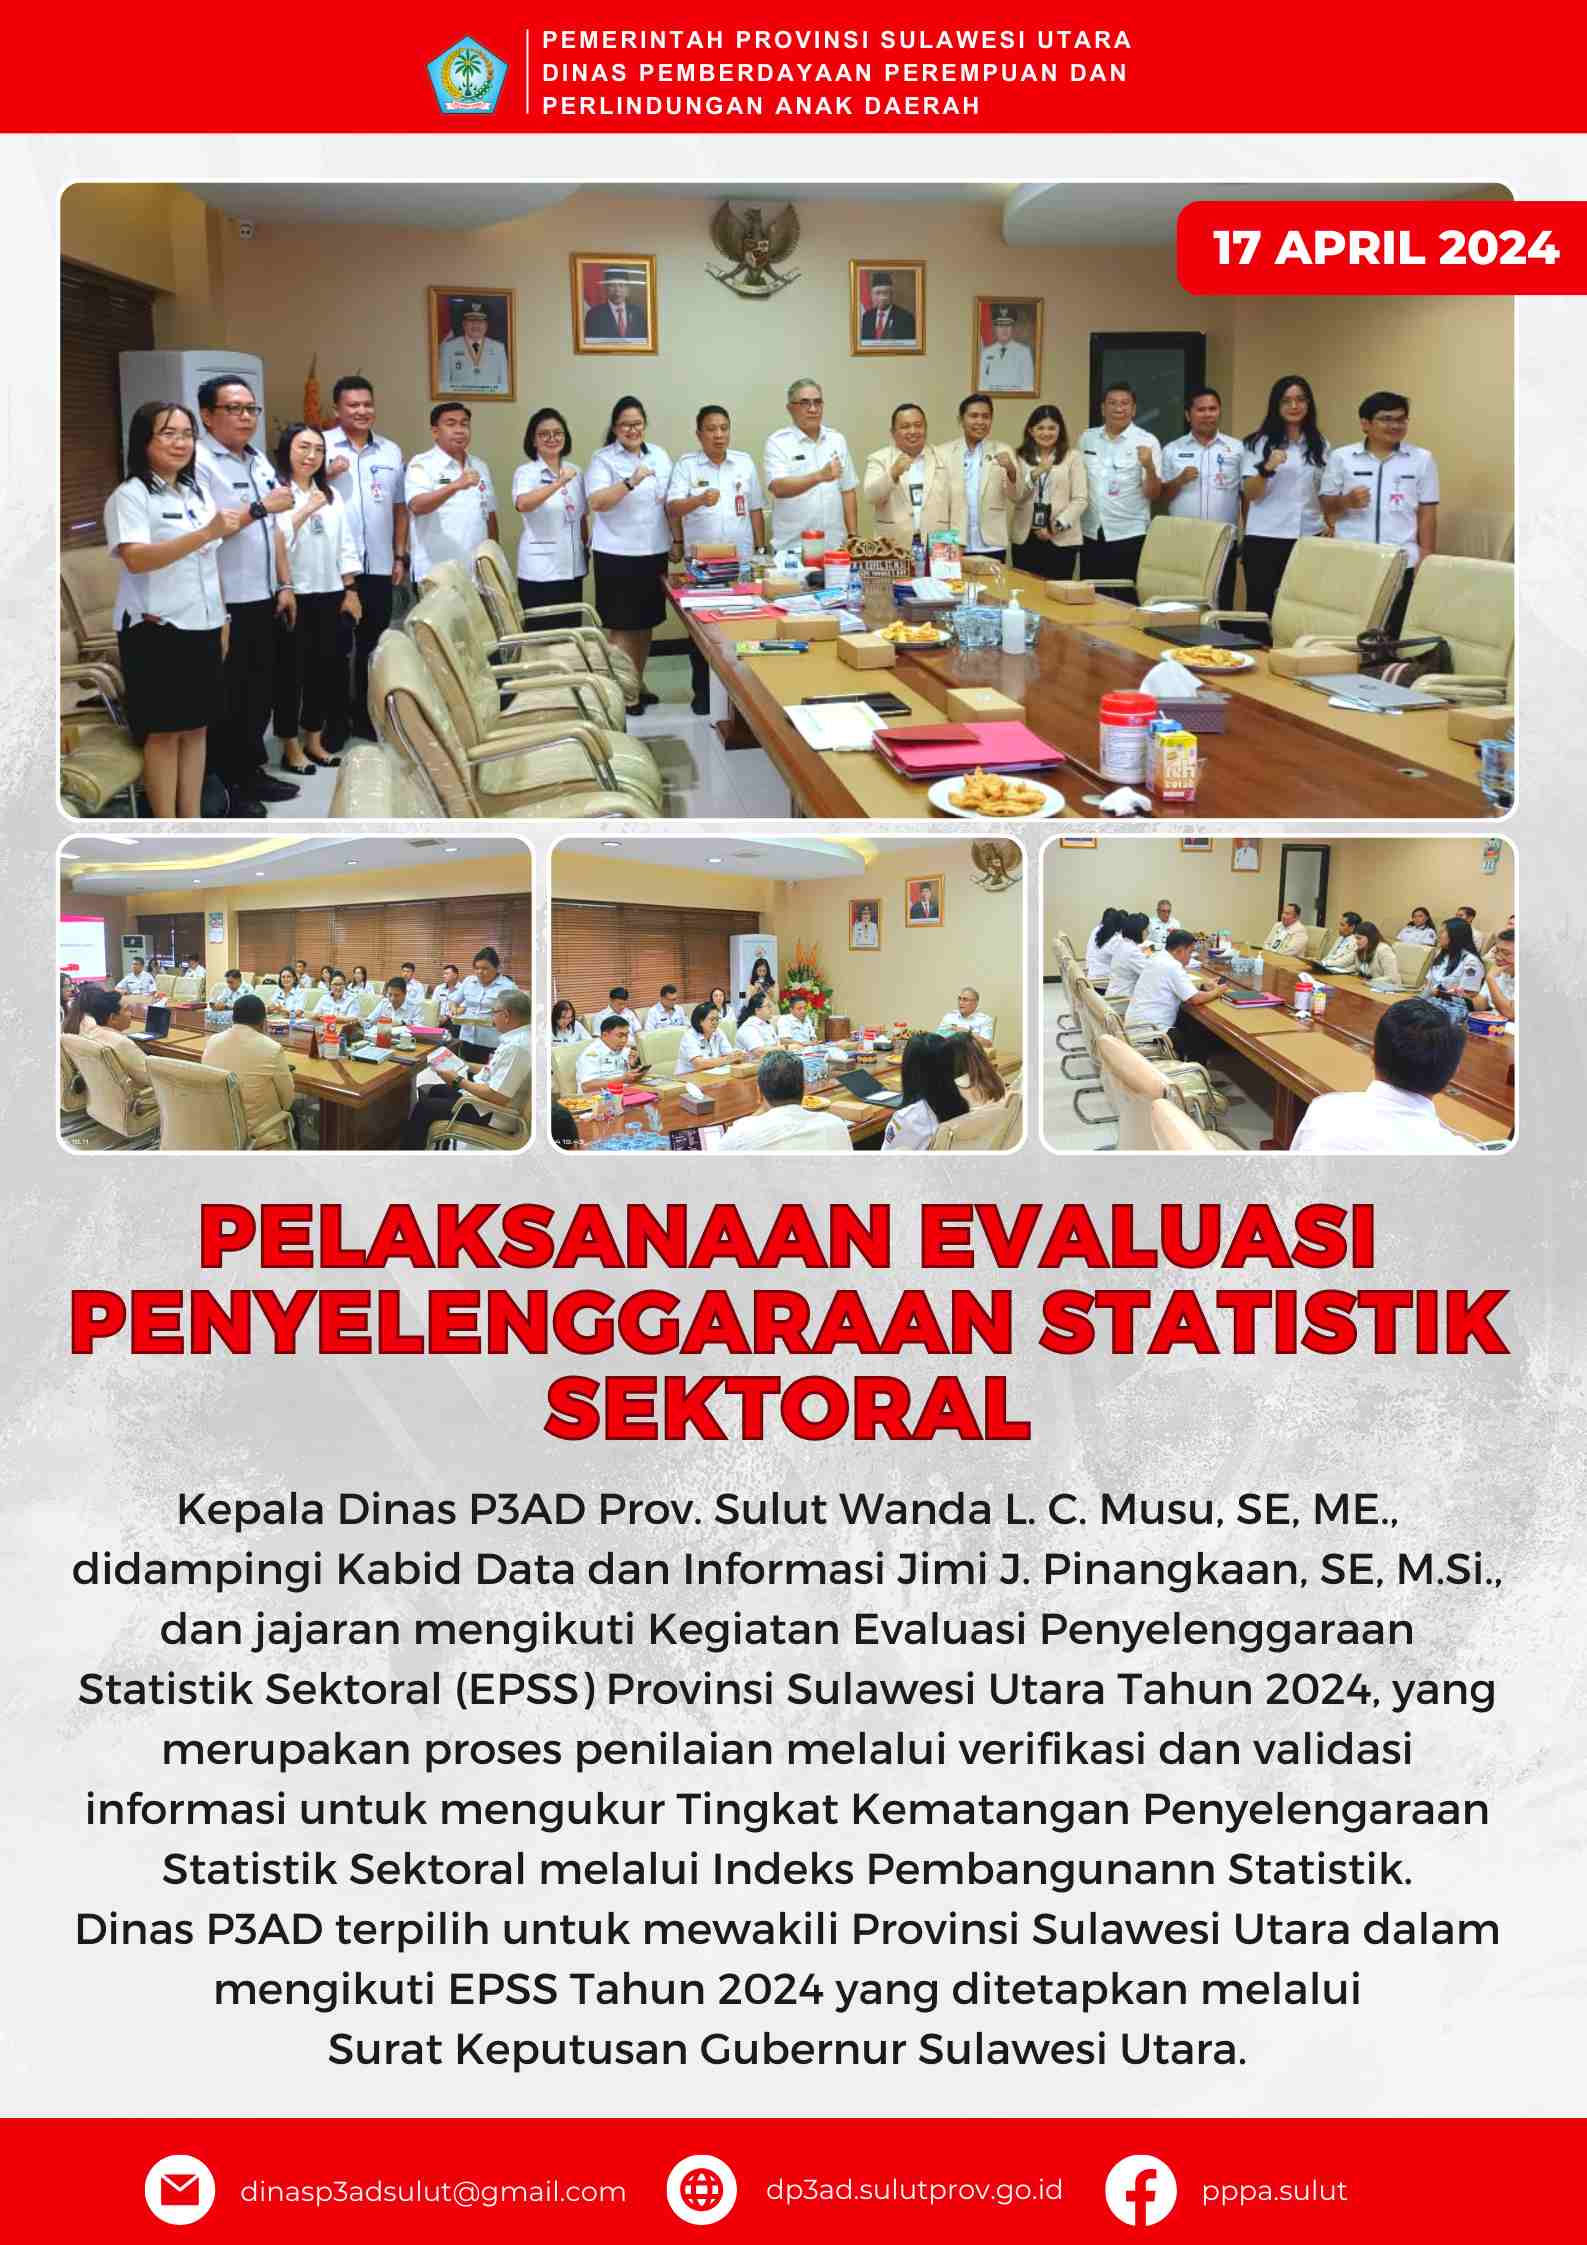 Pelaksanaan Evaluasi Penyelenggaraan Statistik Sektoral